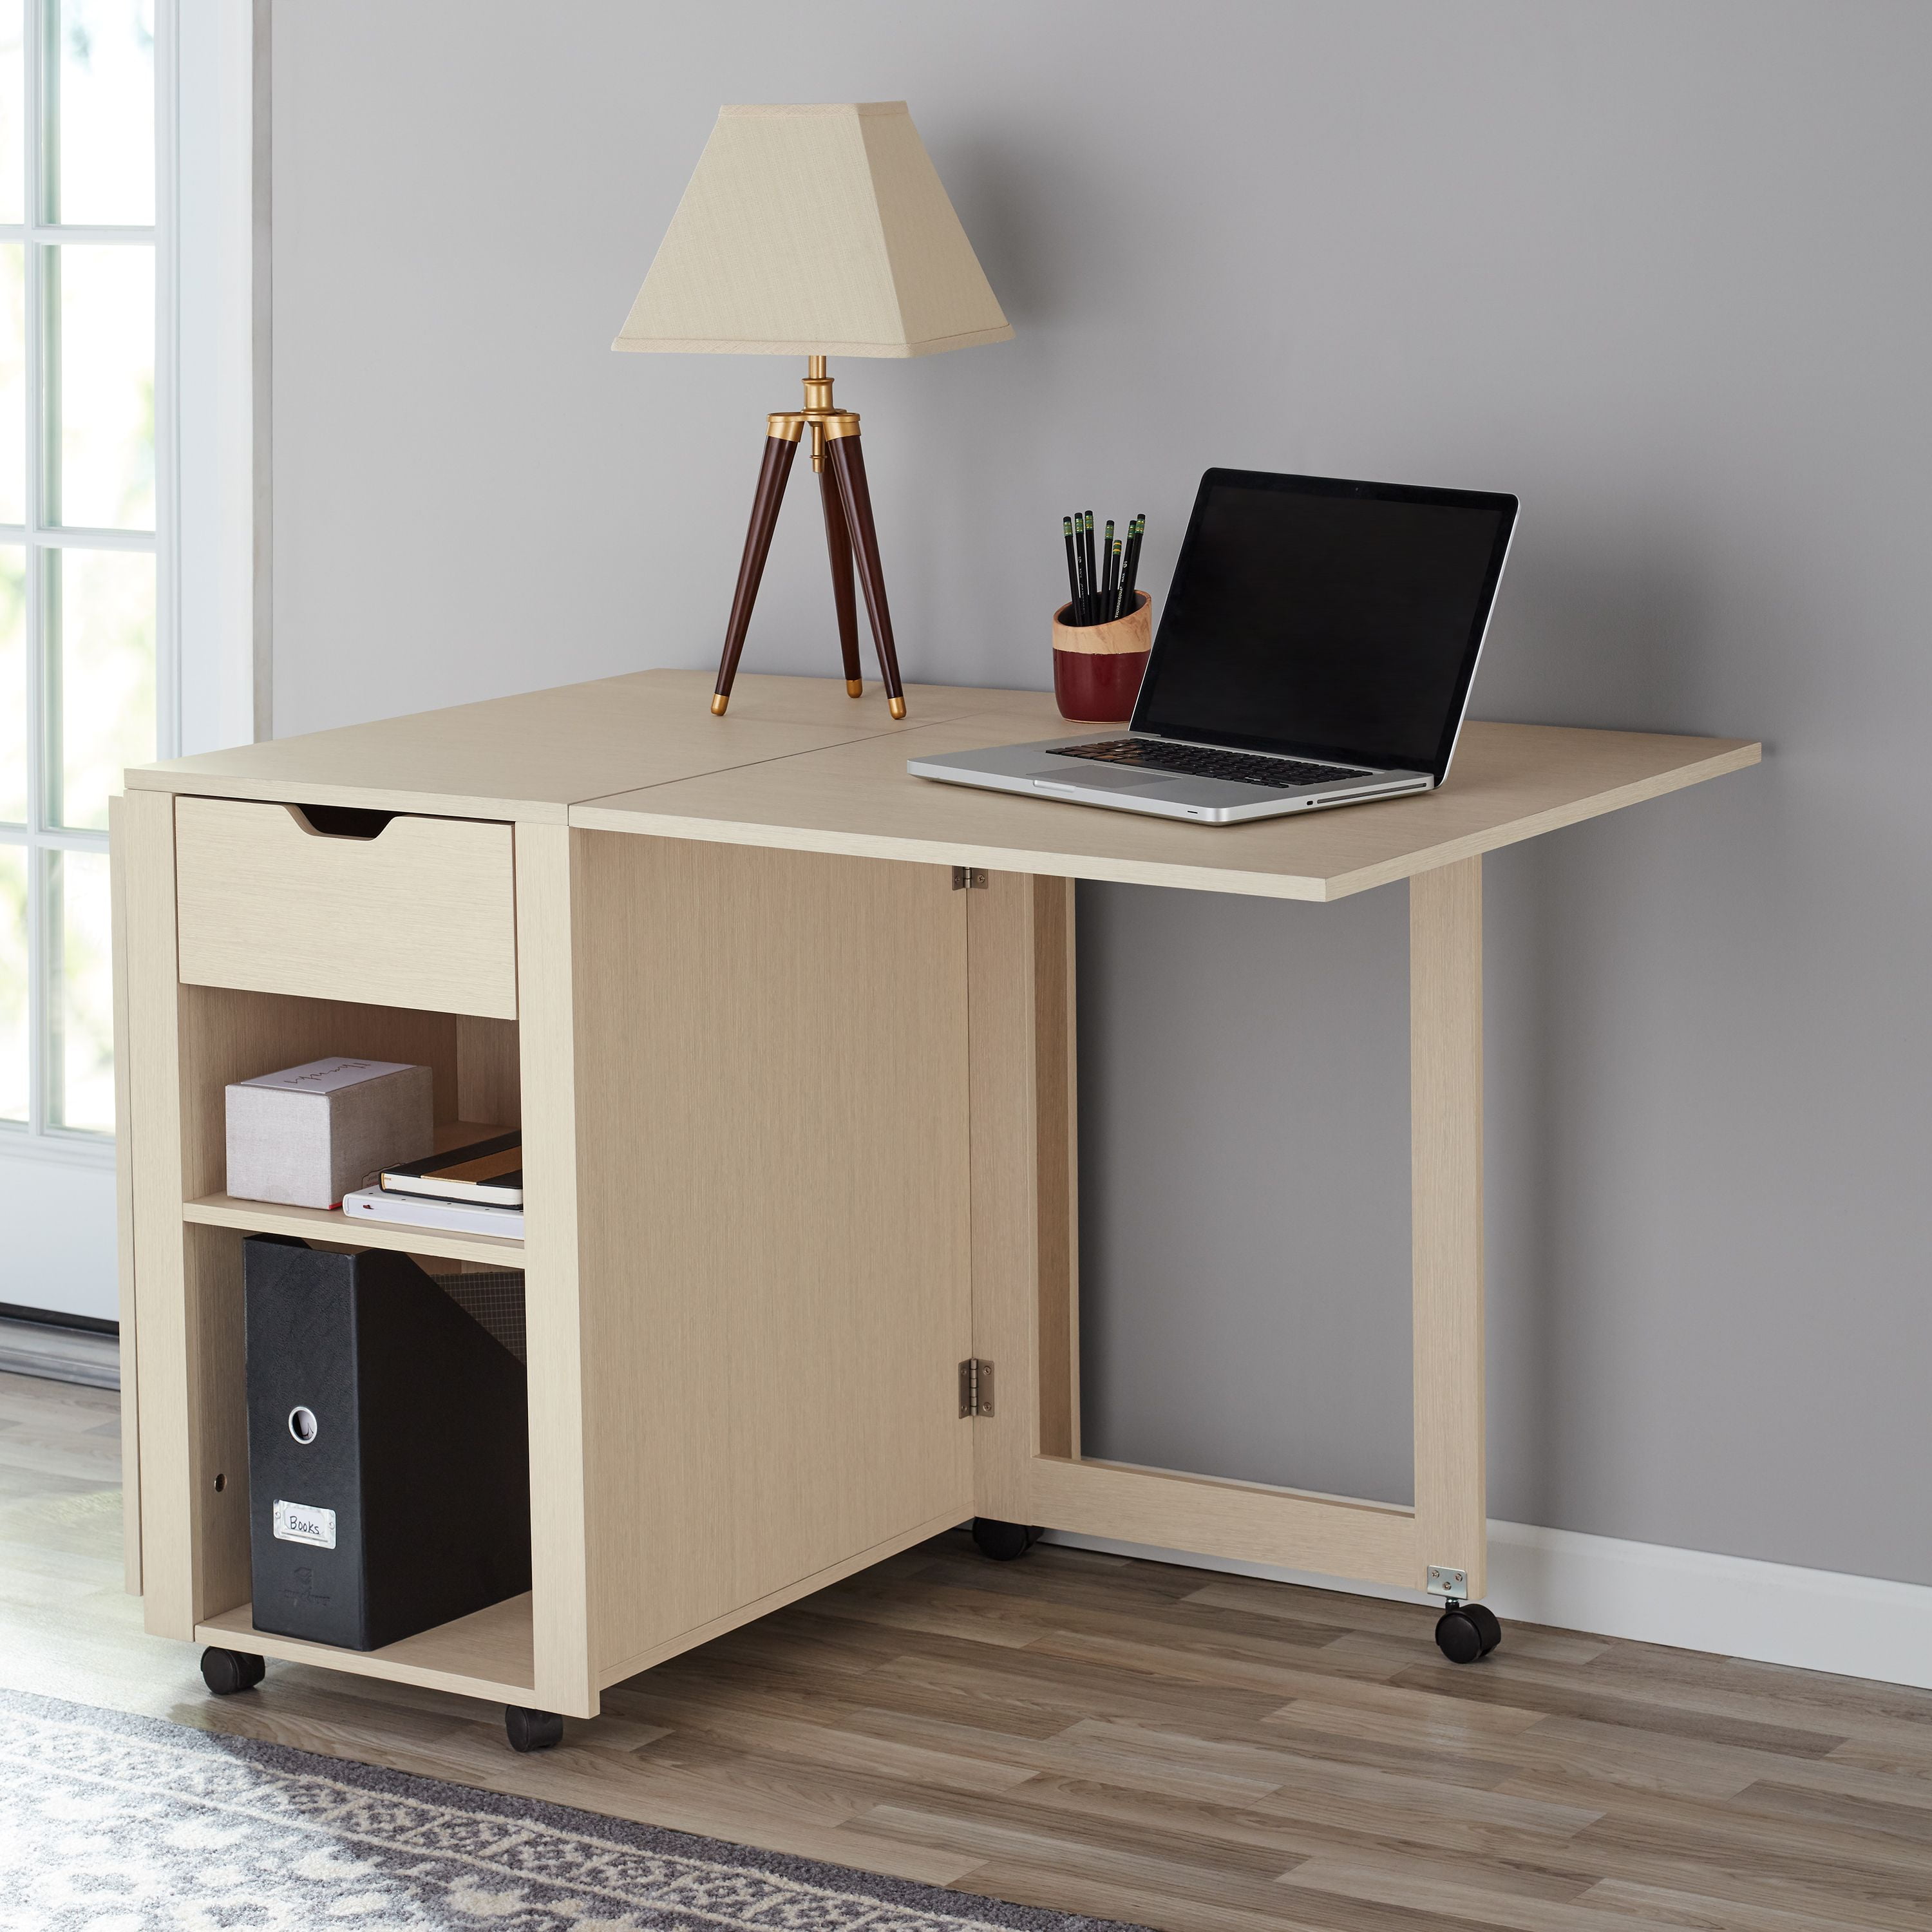 Mainstays Adjustable Rolling Office, Rolling Desk For Bedroom